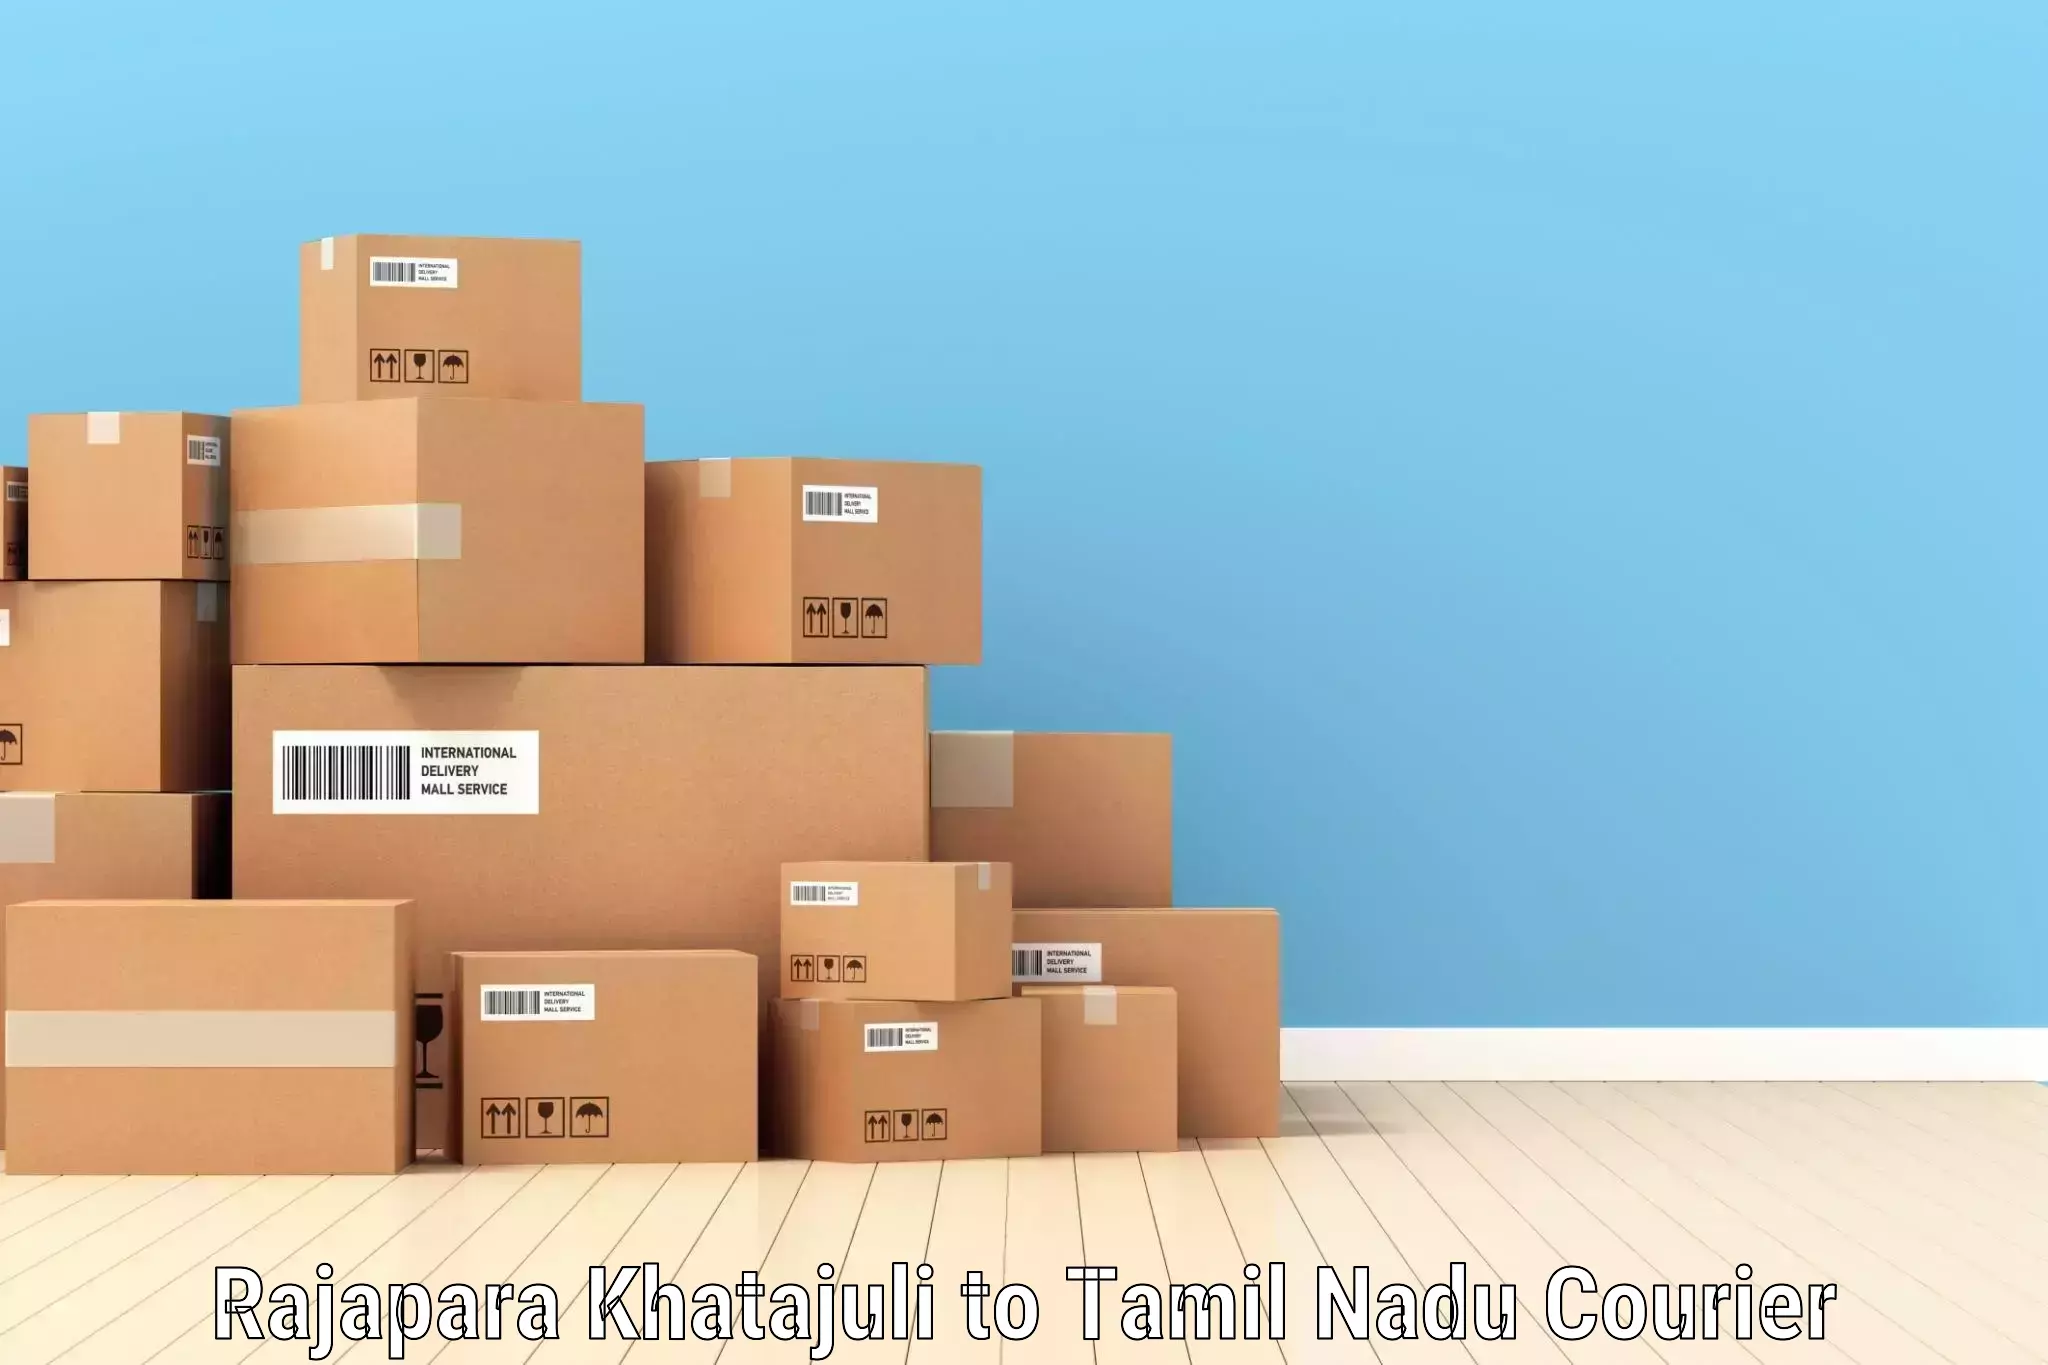 High-capacity parcel service Rajapara Khatajuli to Tirukkoyilur